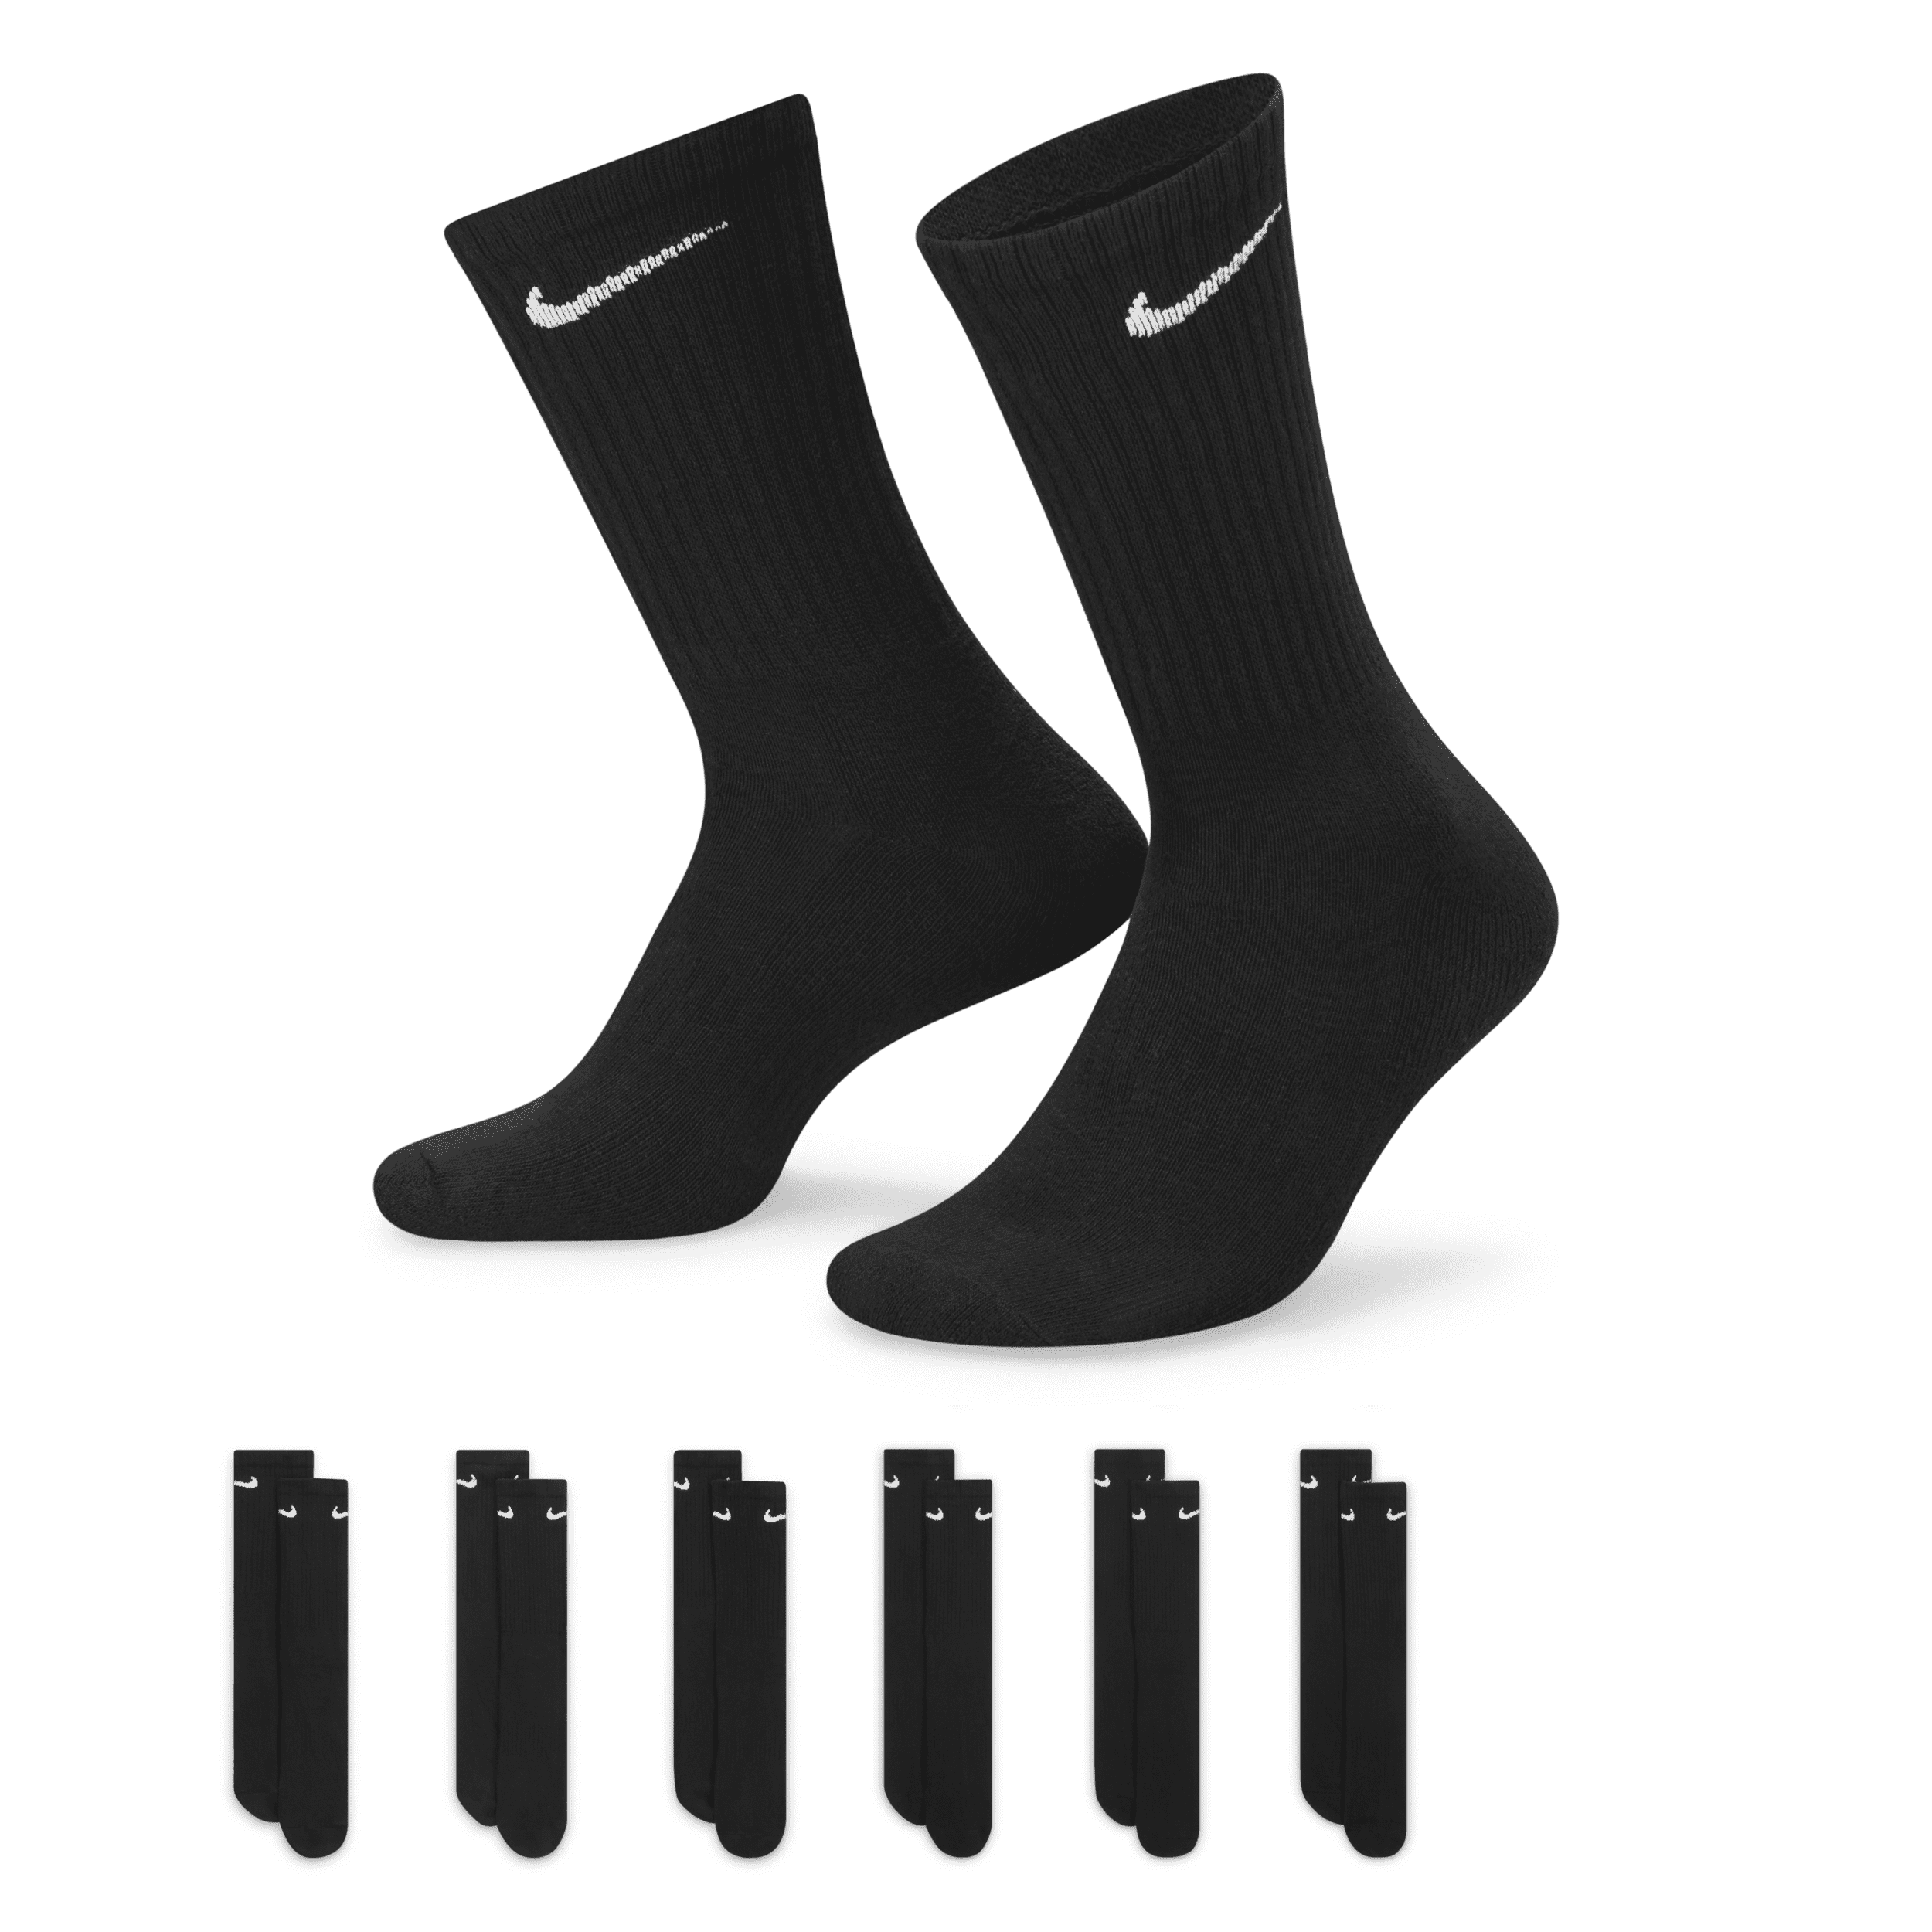 Nike Everyday Cushioned Calcetines largos de entrenamiento (6 pares) - Negro